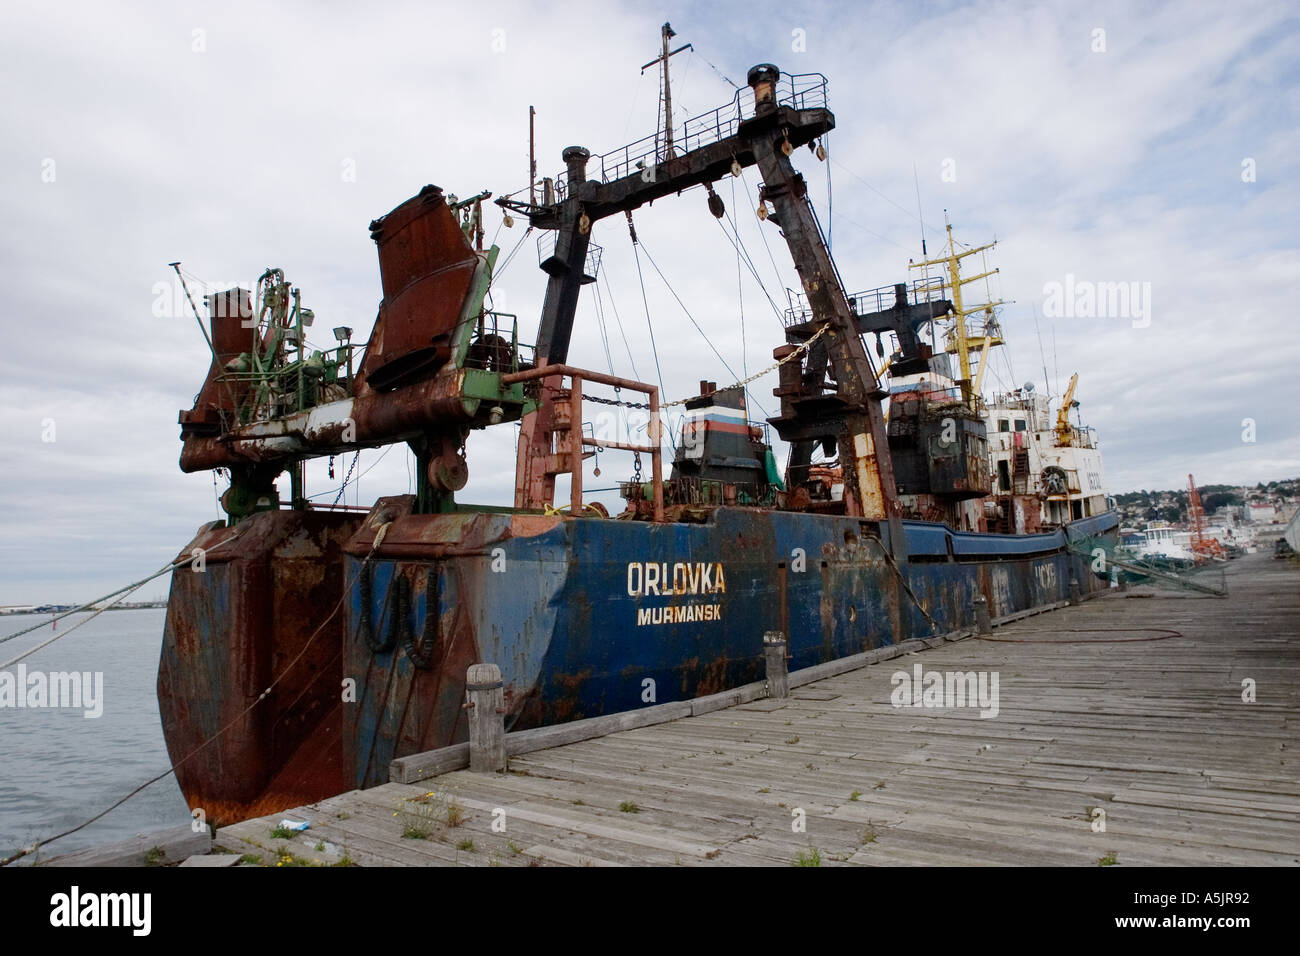 Die Orlowka Murmansk russischen Fischereifahrzeug von Neuseeland Behörden für illegale Fischerei verhaftet Stockfoto